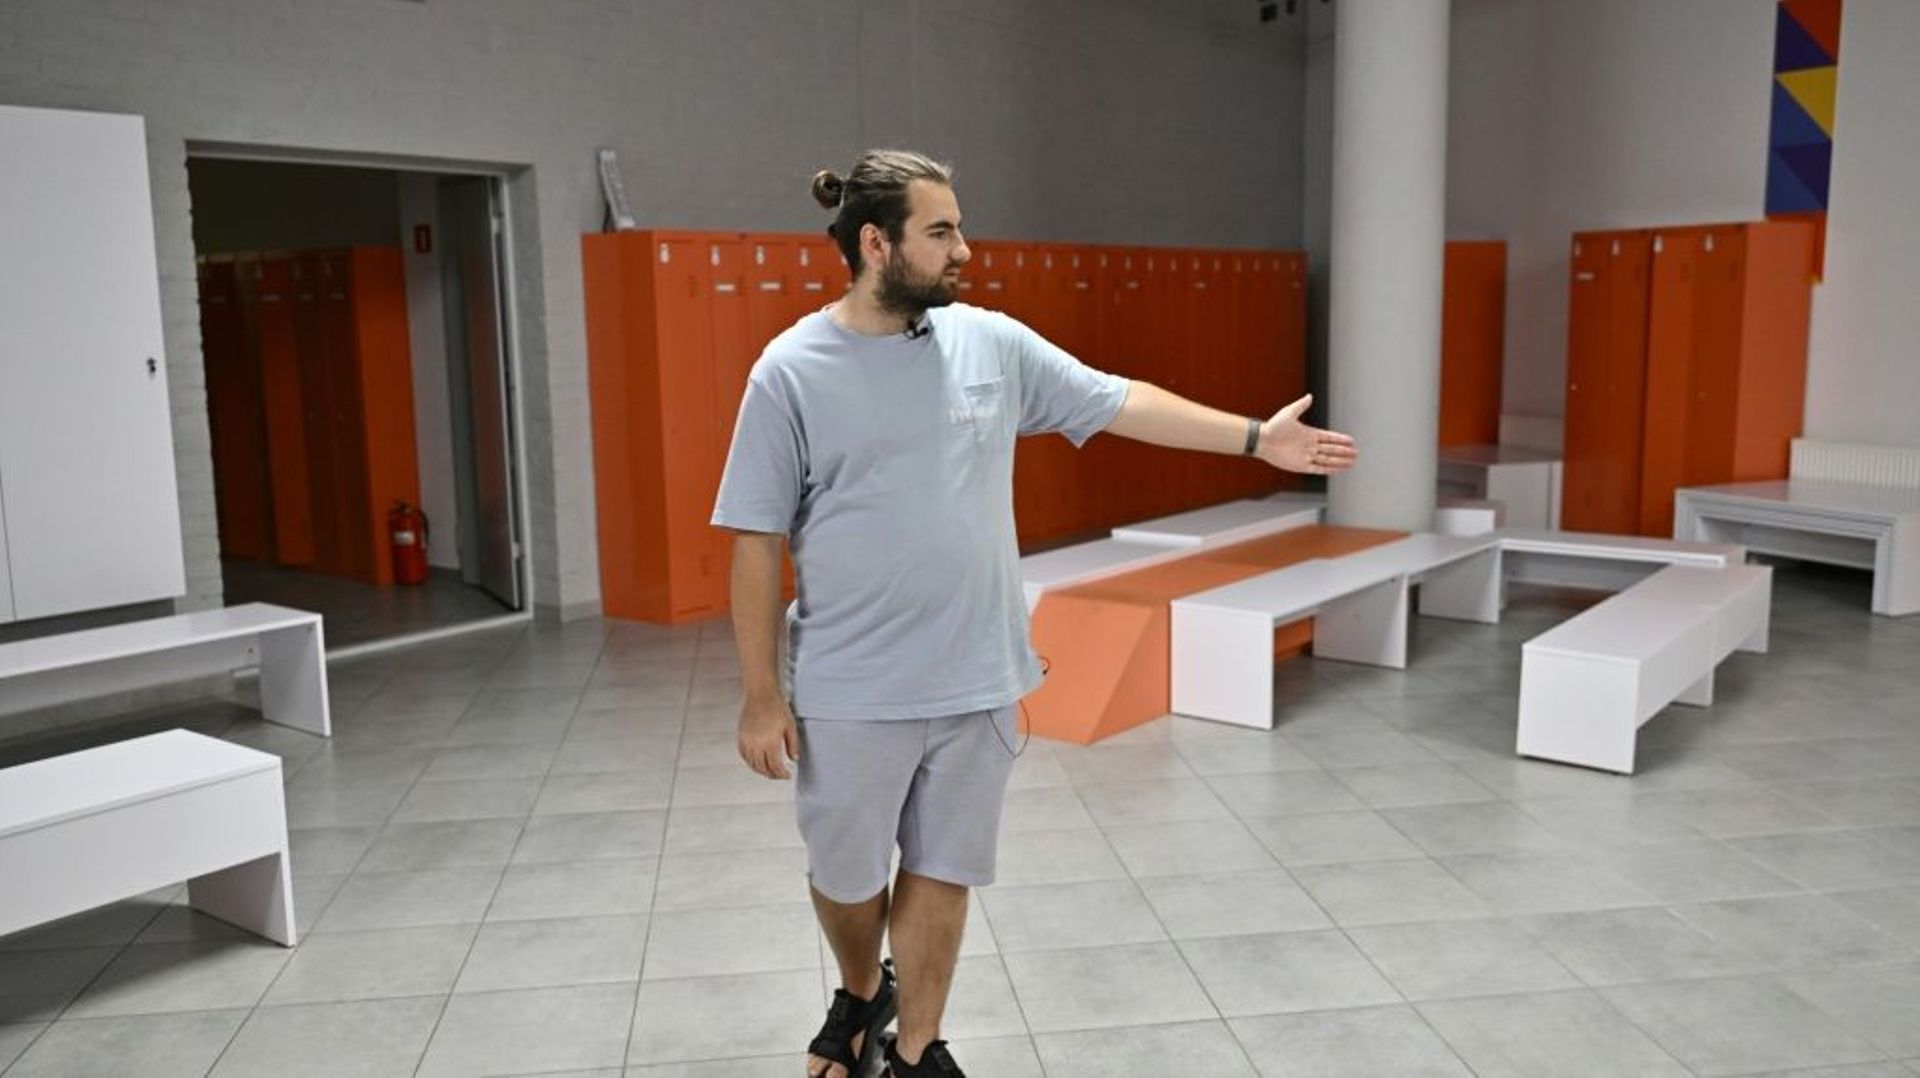 Mykhaïlo Aliokhine, directeur d’une école privée, montre l’abri souterrain dans lequel les élèves pourront se réfugier, le 25 août 2022 à Kiev, en Ukraine